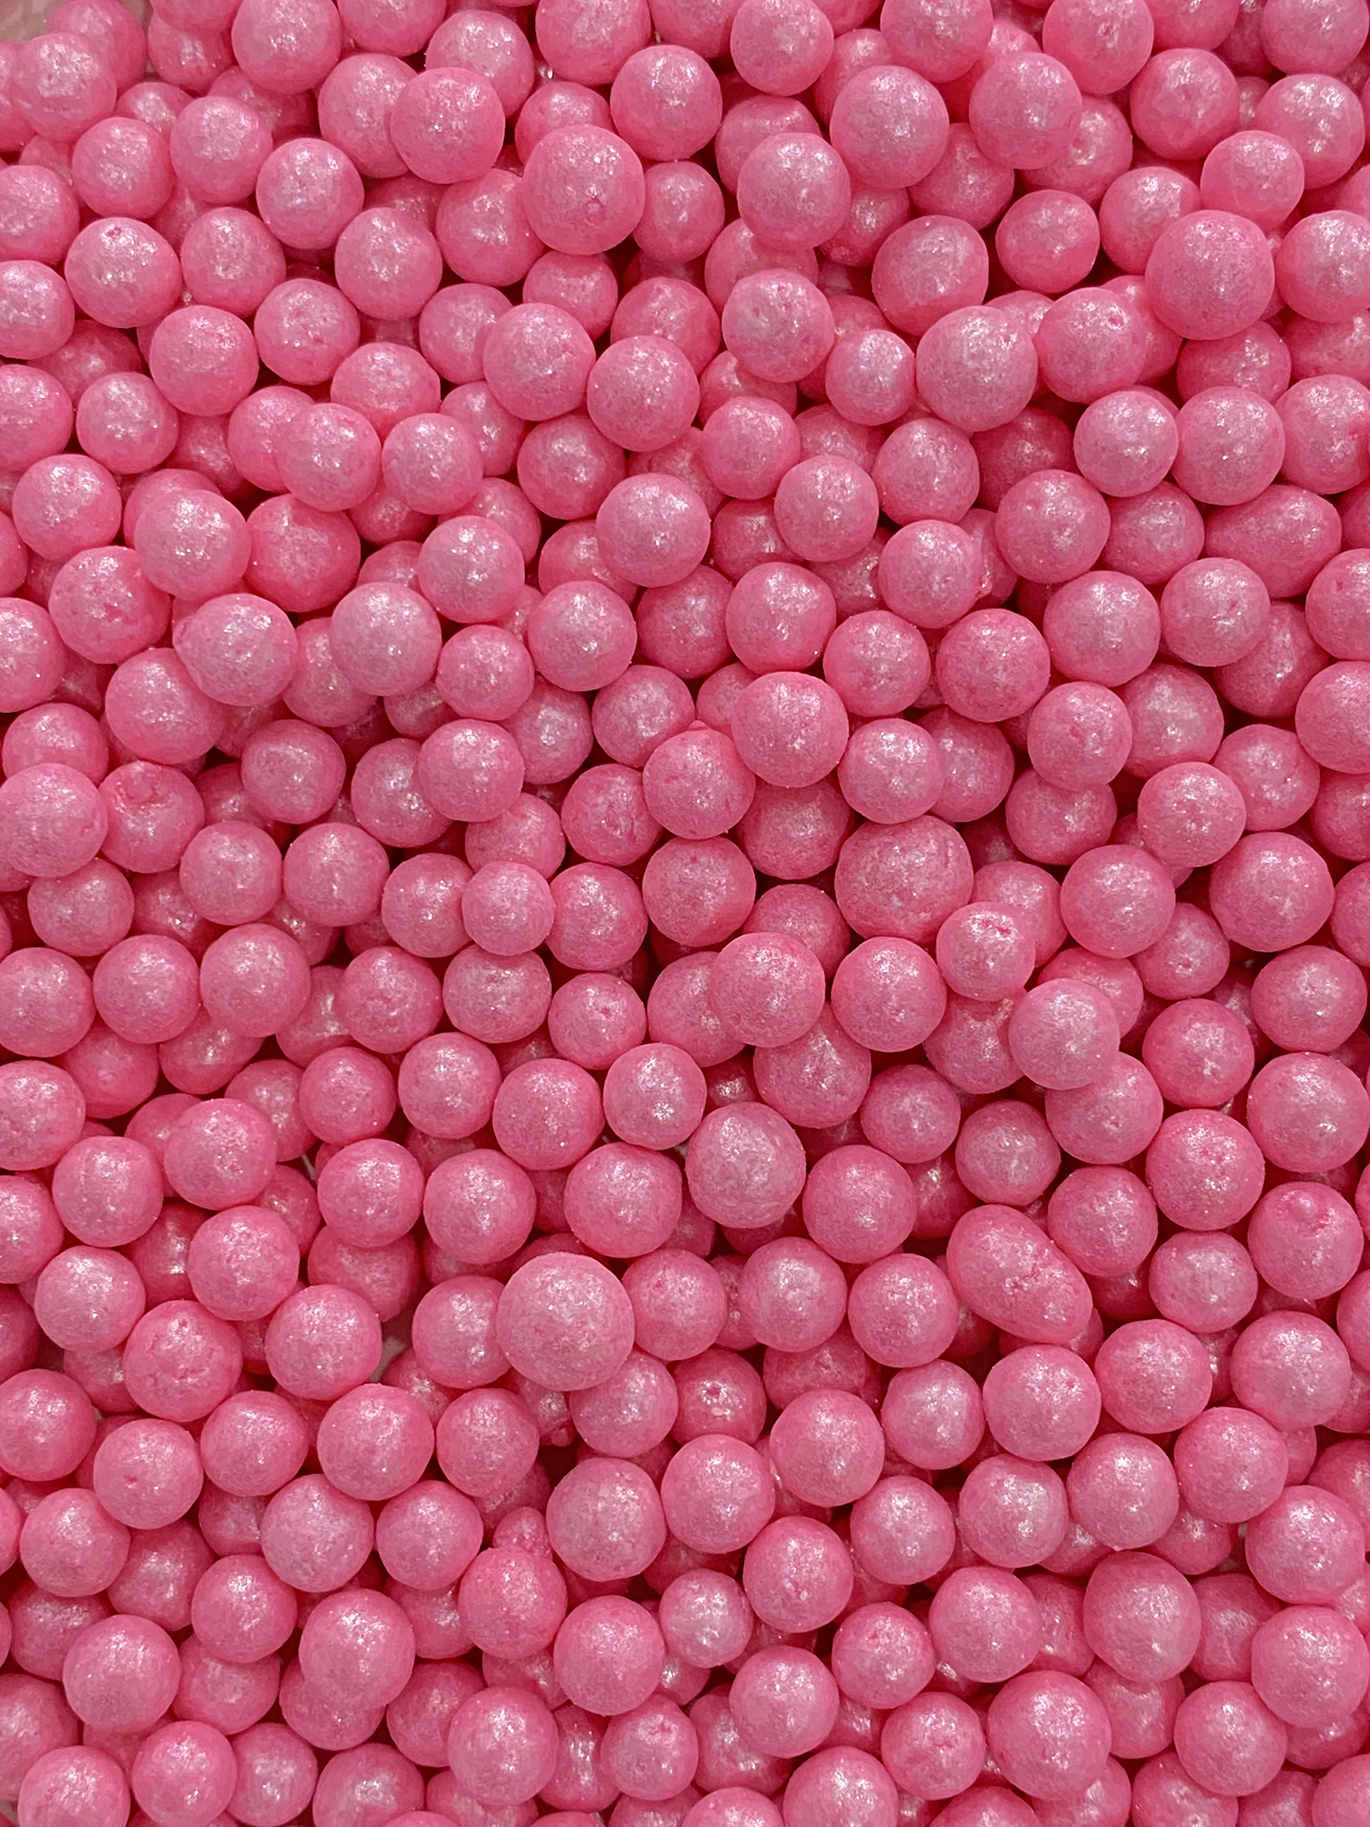 Hot Pink Pearls - Galaxy Sprinkles